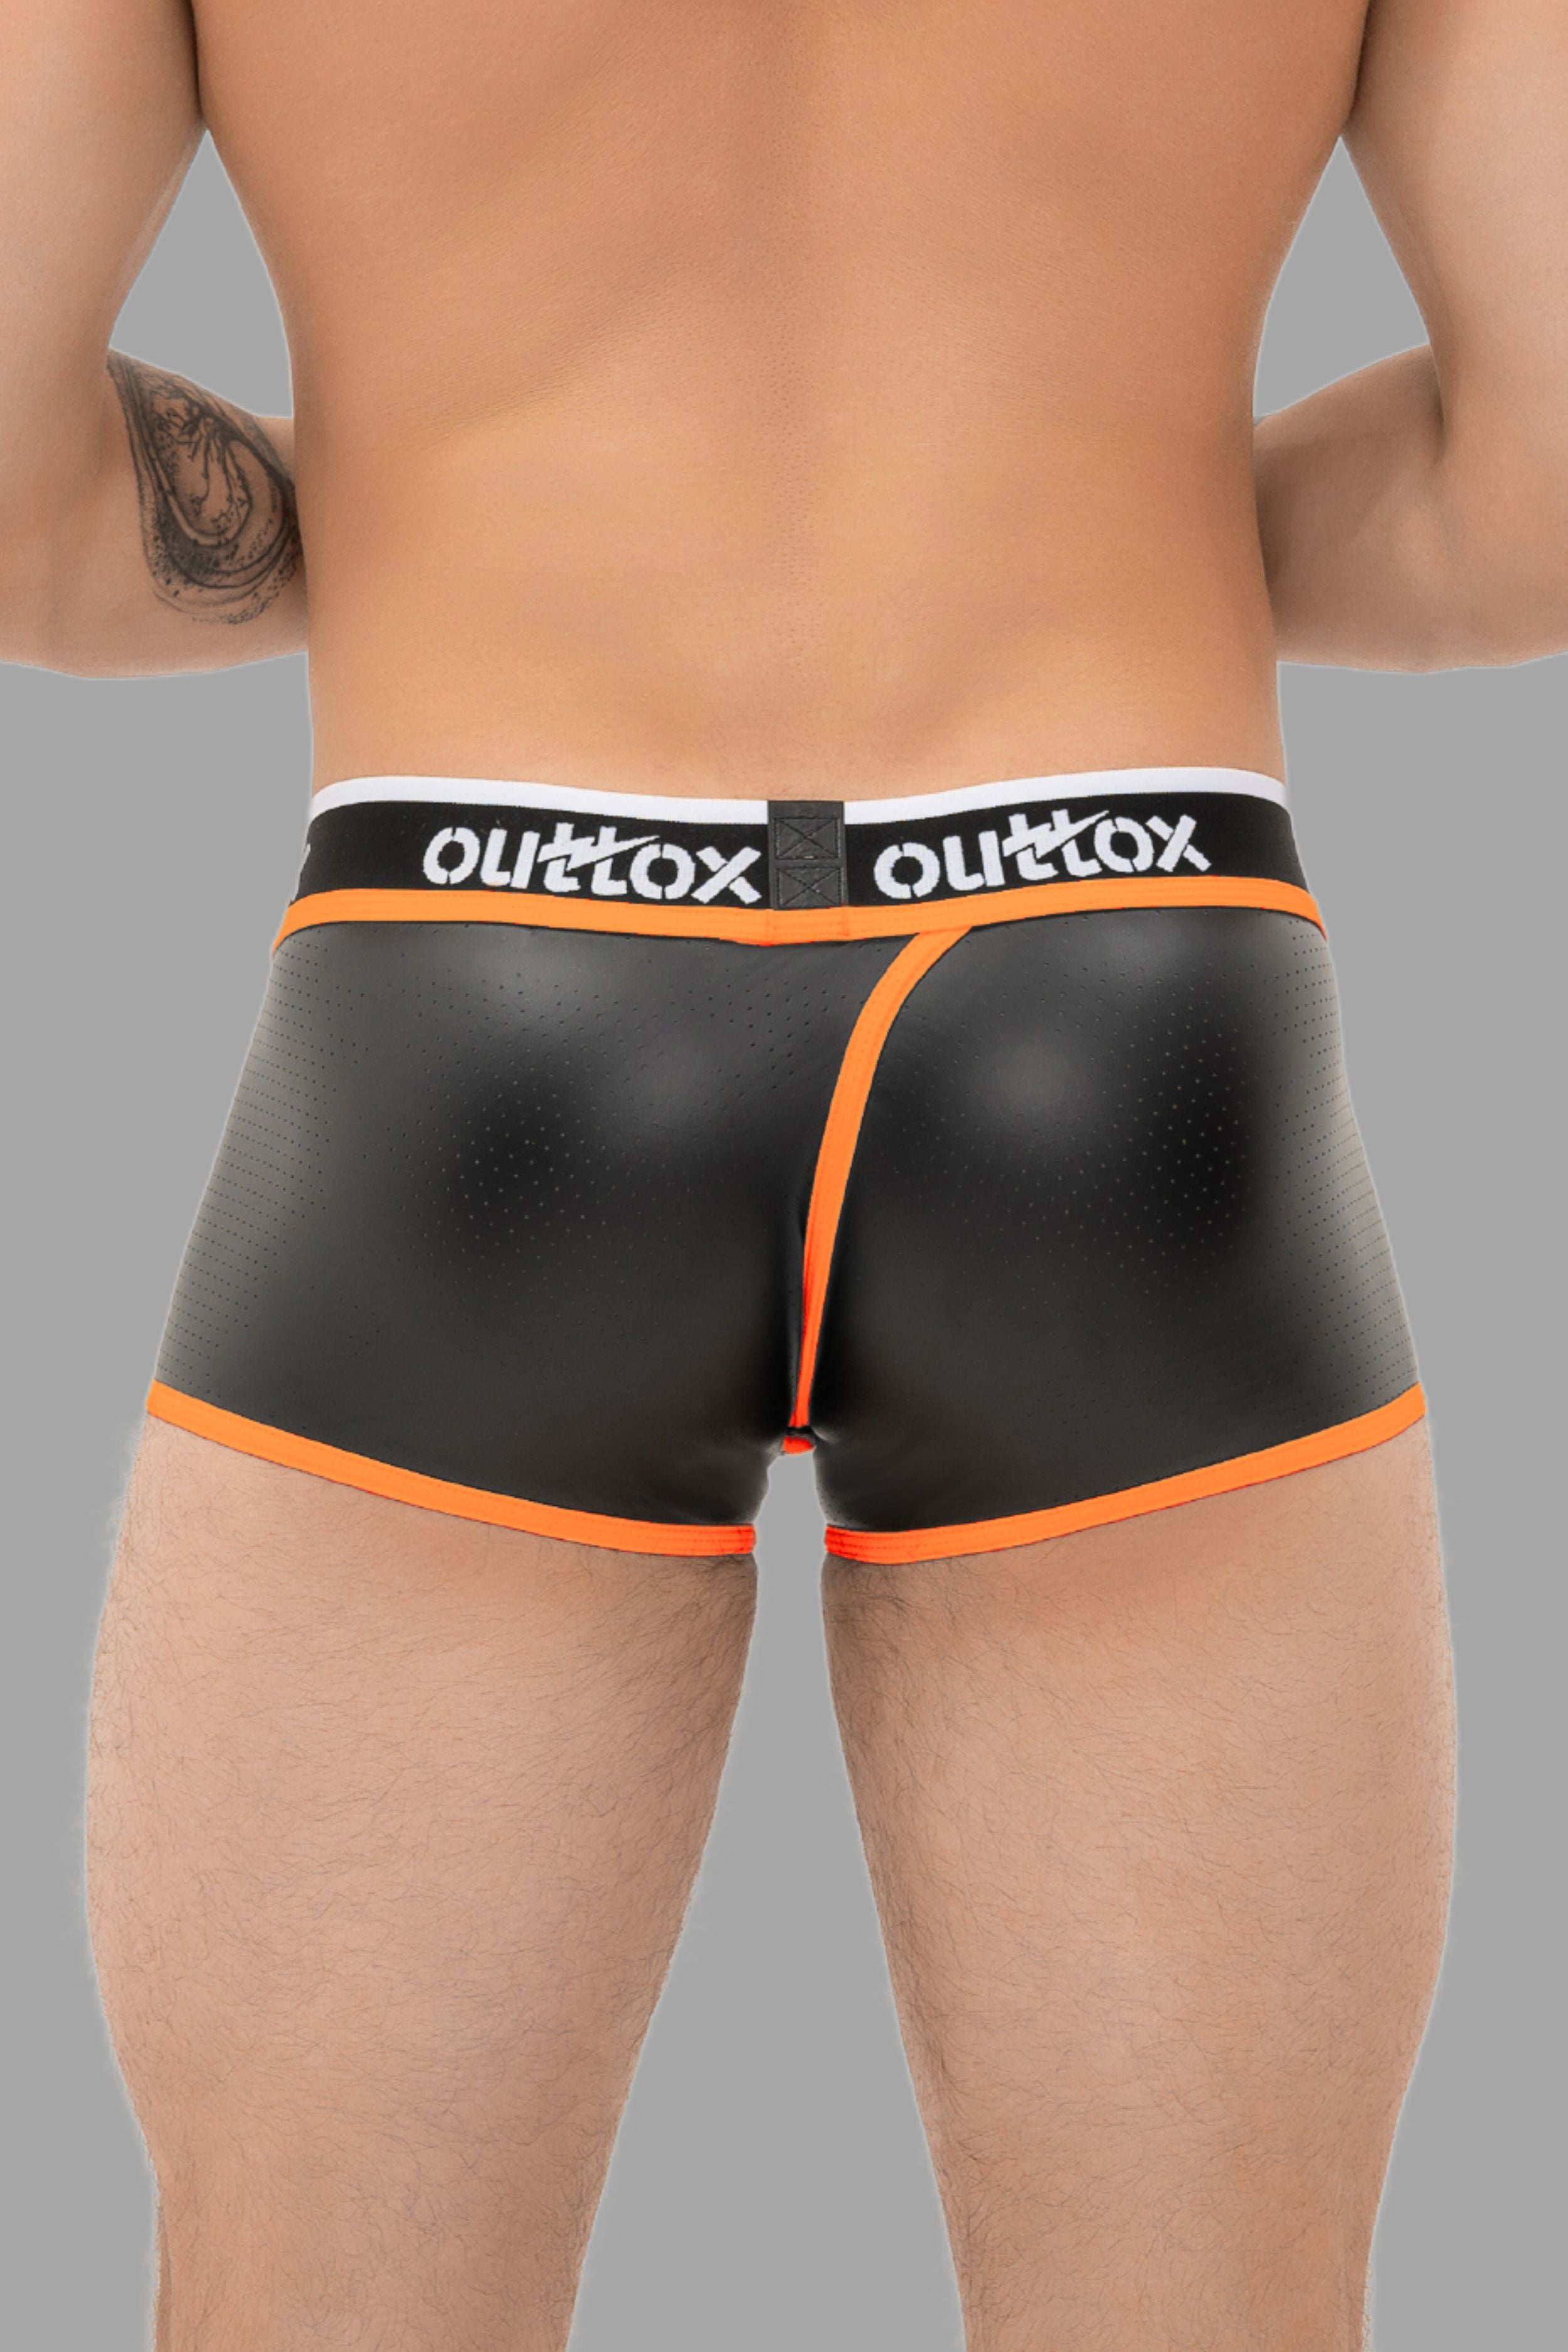 Outtox. Pantalones cortos traseros envueltos con bragueta a presión. Negro+Naranja